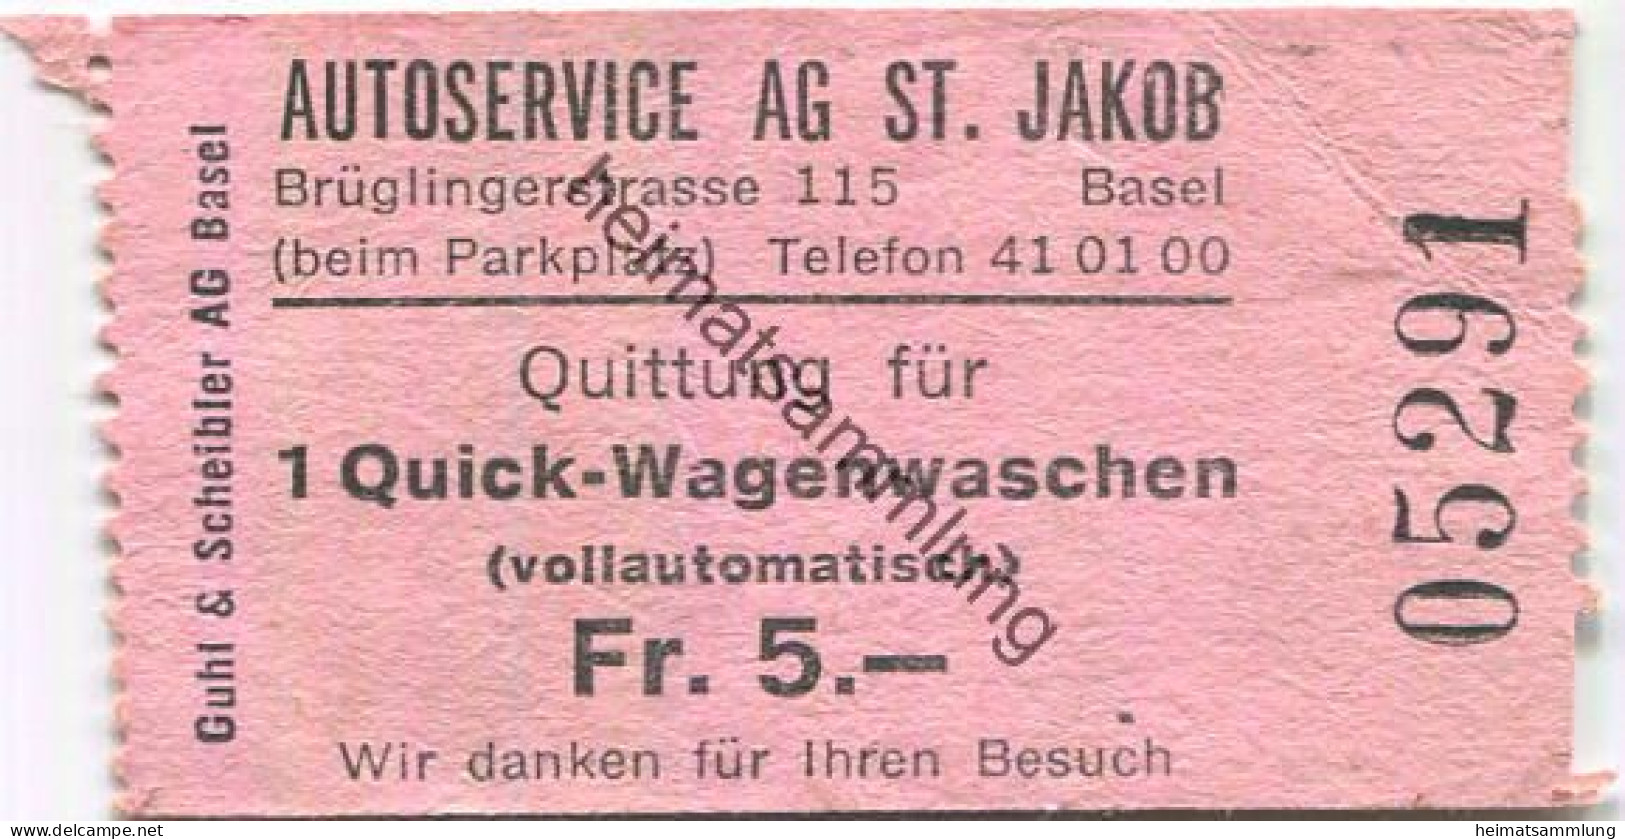 Schweiz - Basel - Quittung Für 1 Quick-Wagenwaschen - Autoservice AG St. Jakob Brüglinerstrasse 115 - Suisse